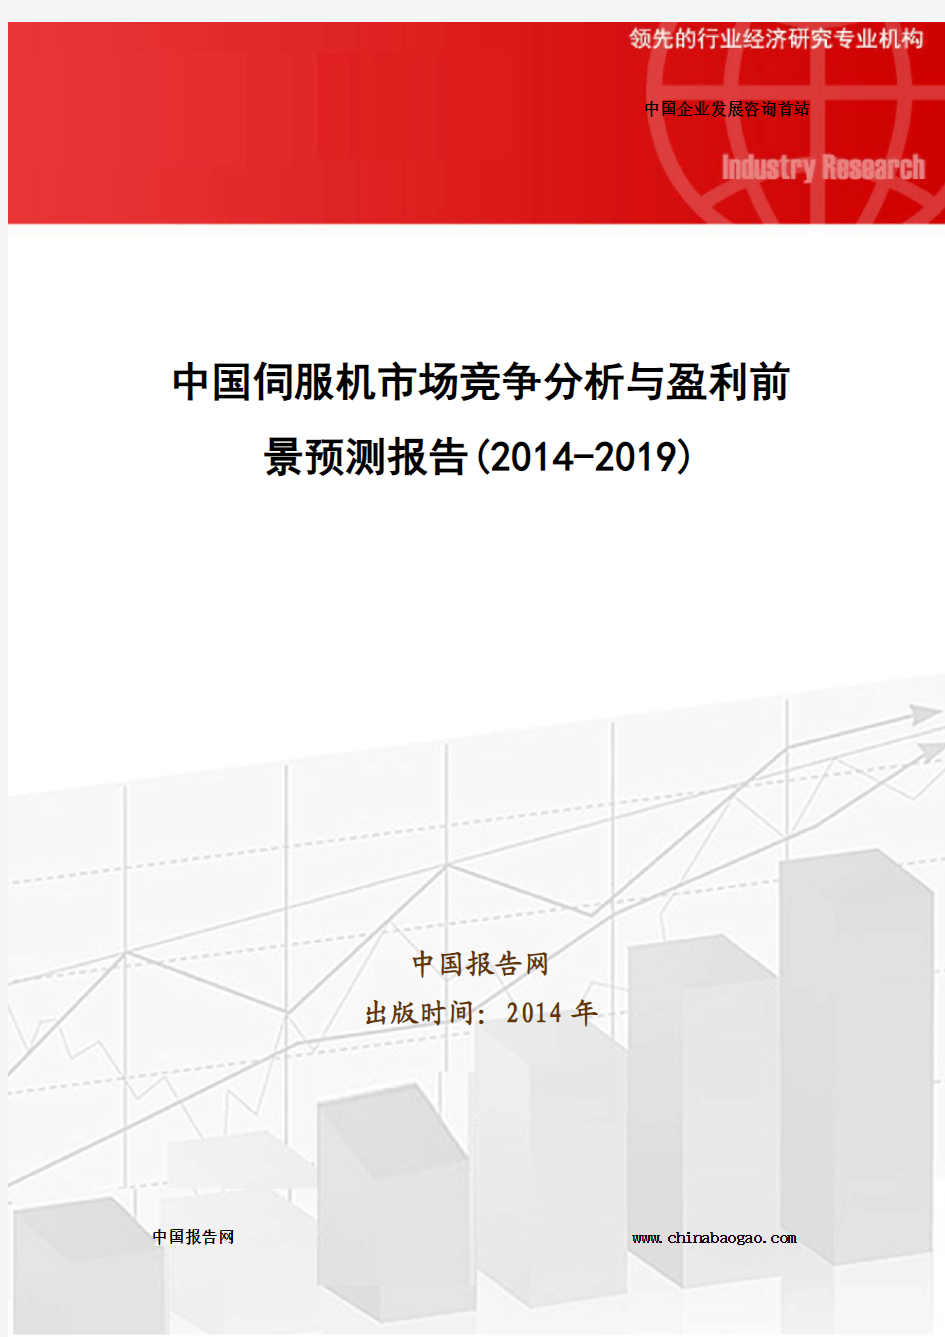 中国伺服机市场竞争分析与盈利前景预测报告(2014-2019)